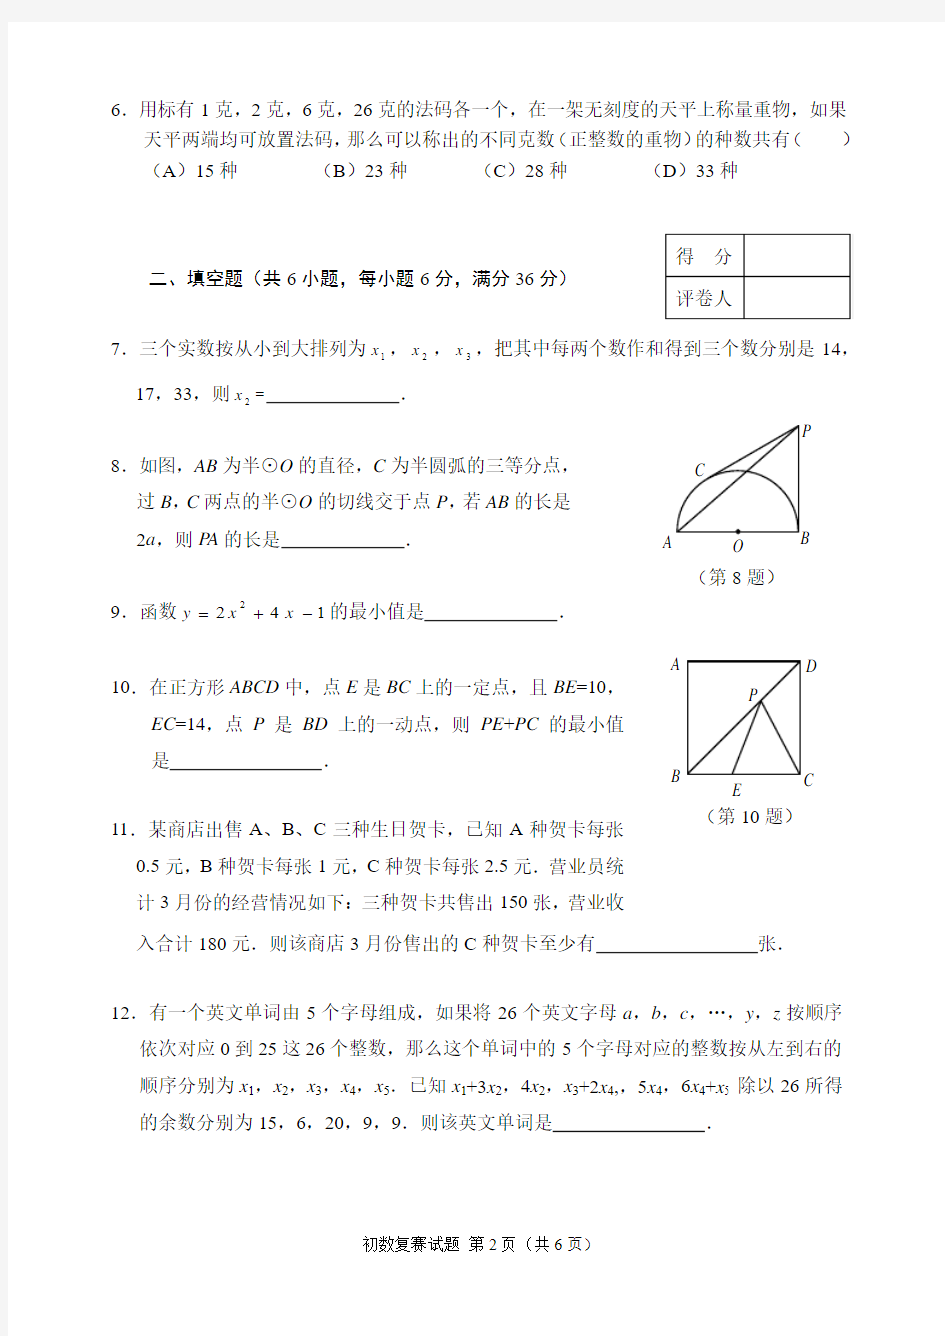 浙江省2006年全国初中数学竞赛复赛试题及答案